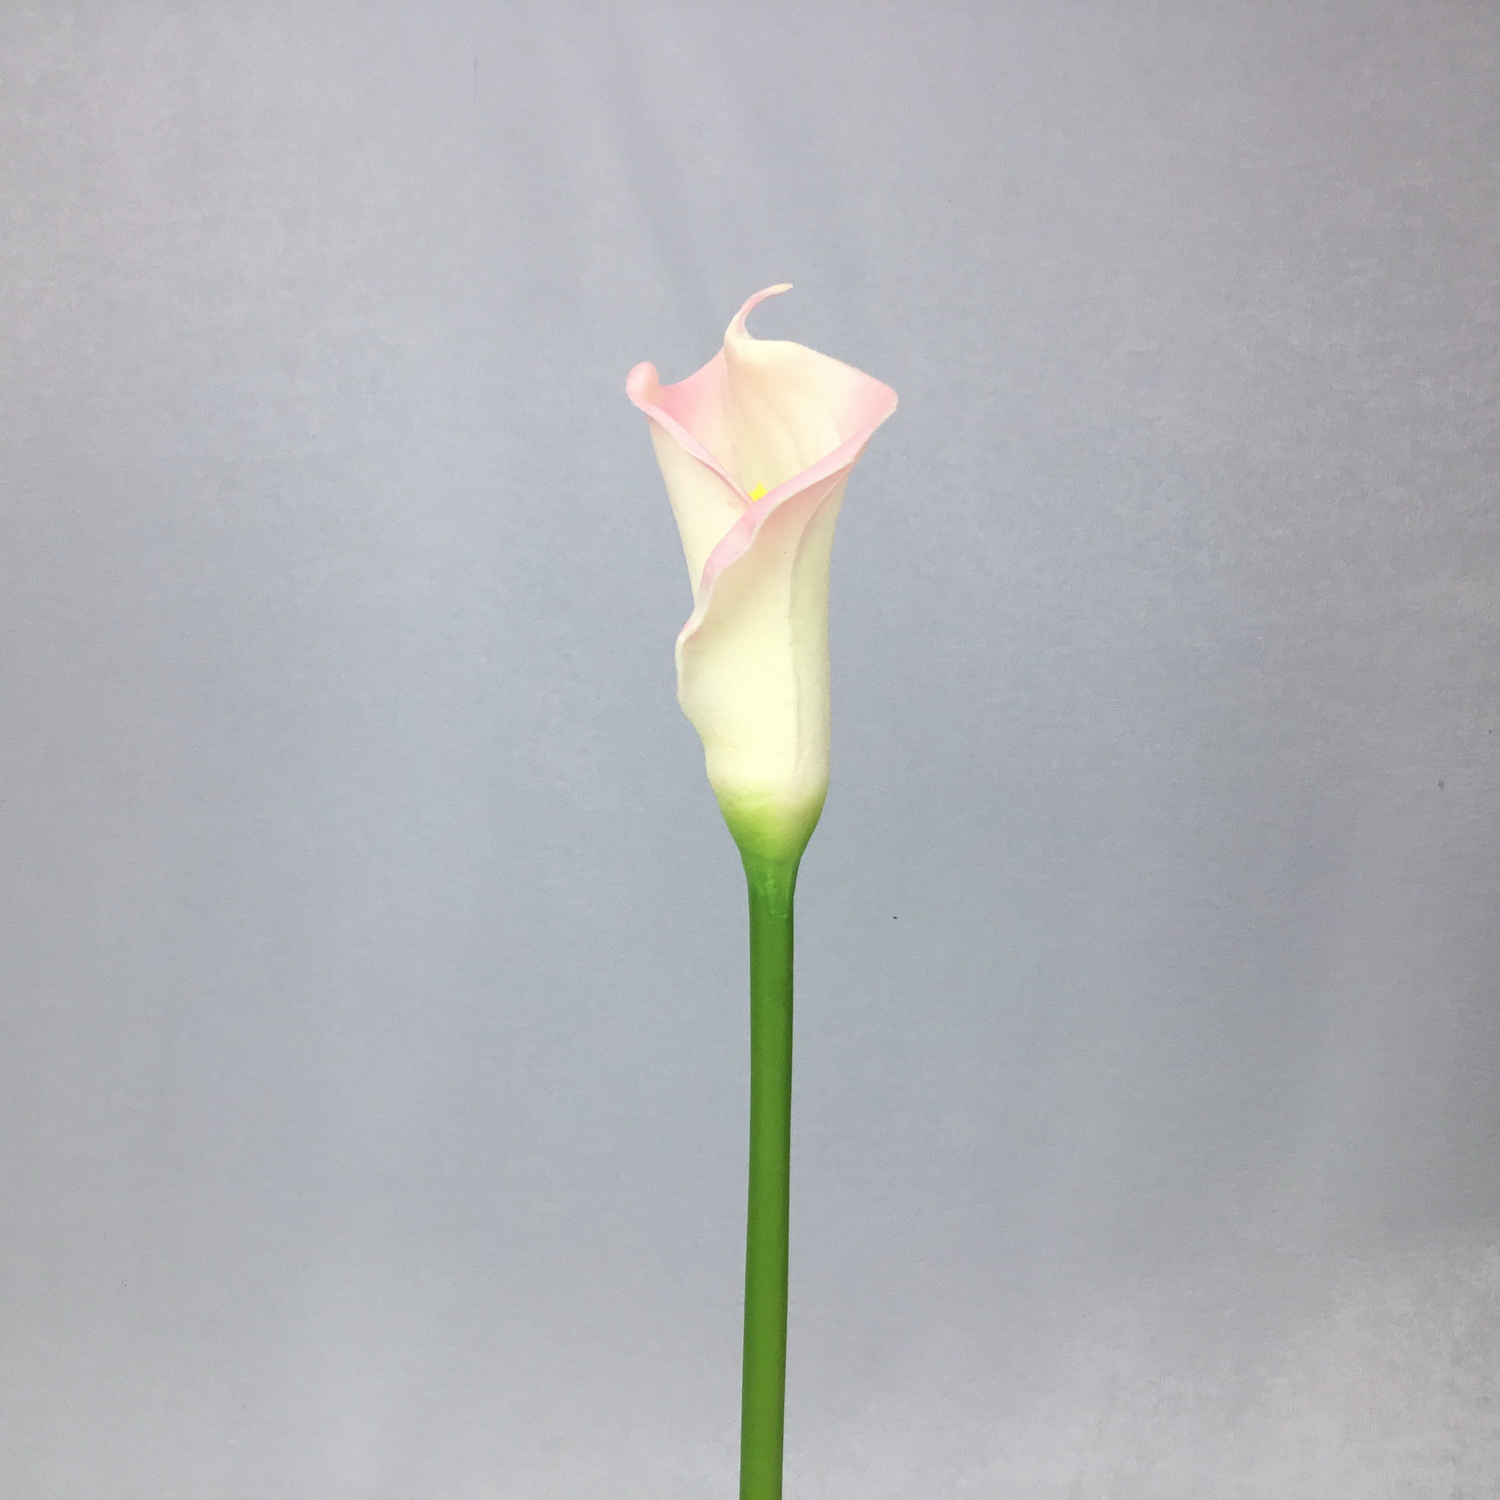 ดอกไม้ประดิษฐ์ ดอกคาล่าลิลลี่ประดิษฐ์ ดอกไม้ประดับบ้าน